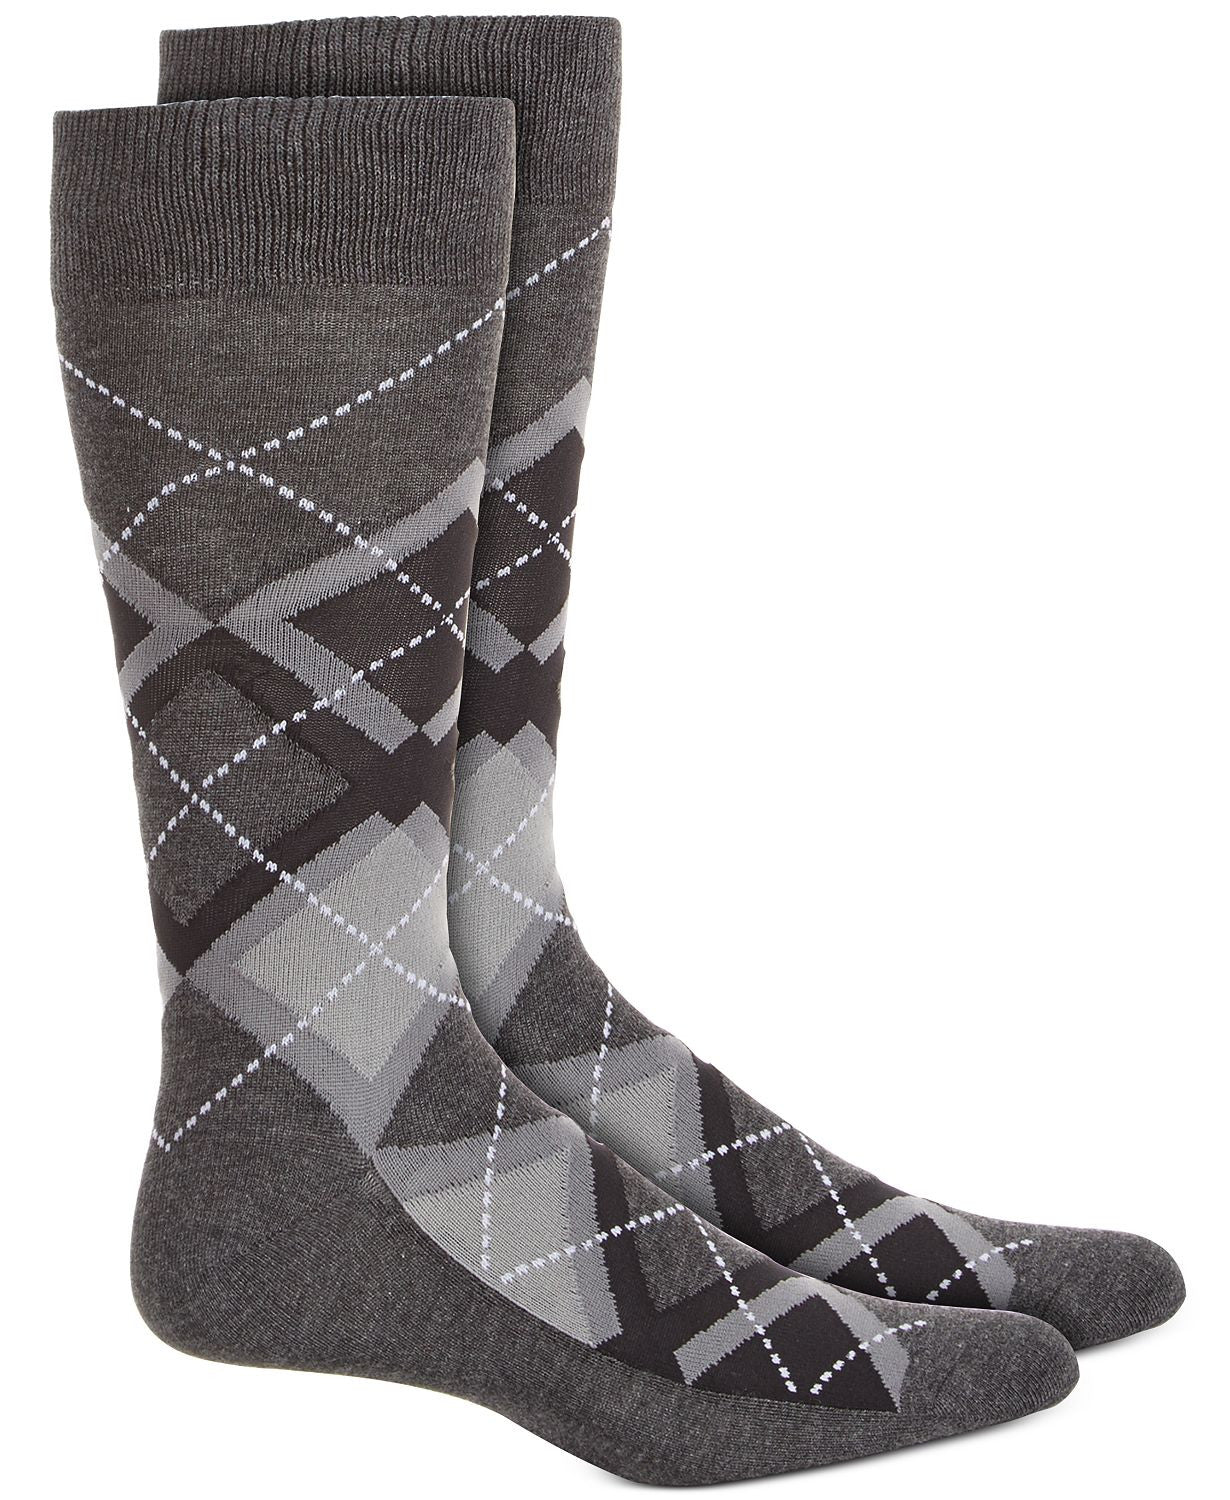 Alfani Argyle Socks / Charcoal Grey